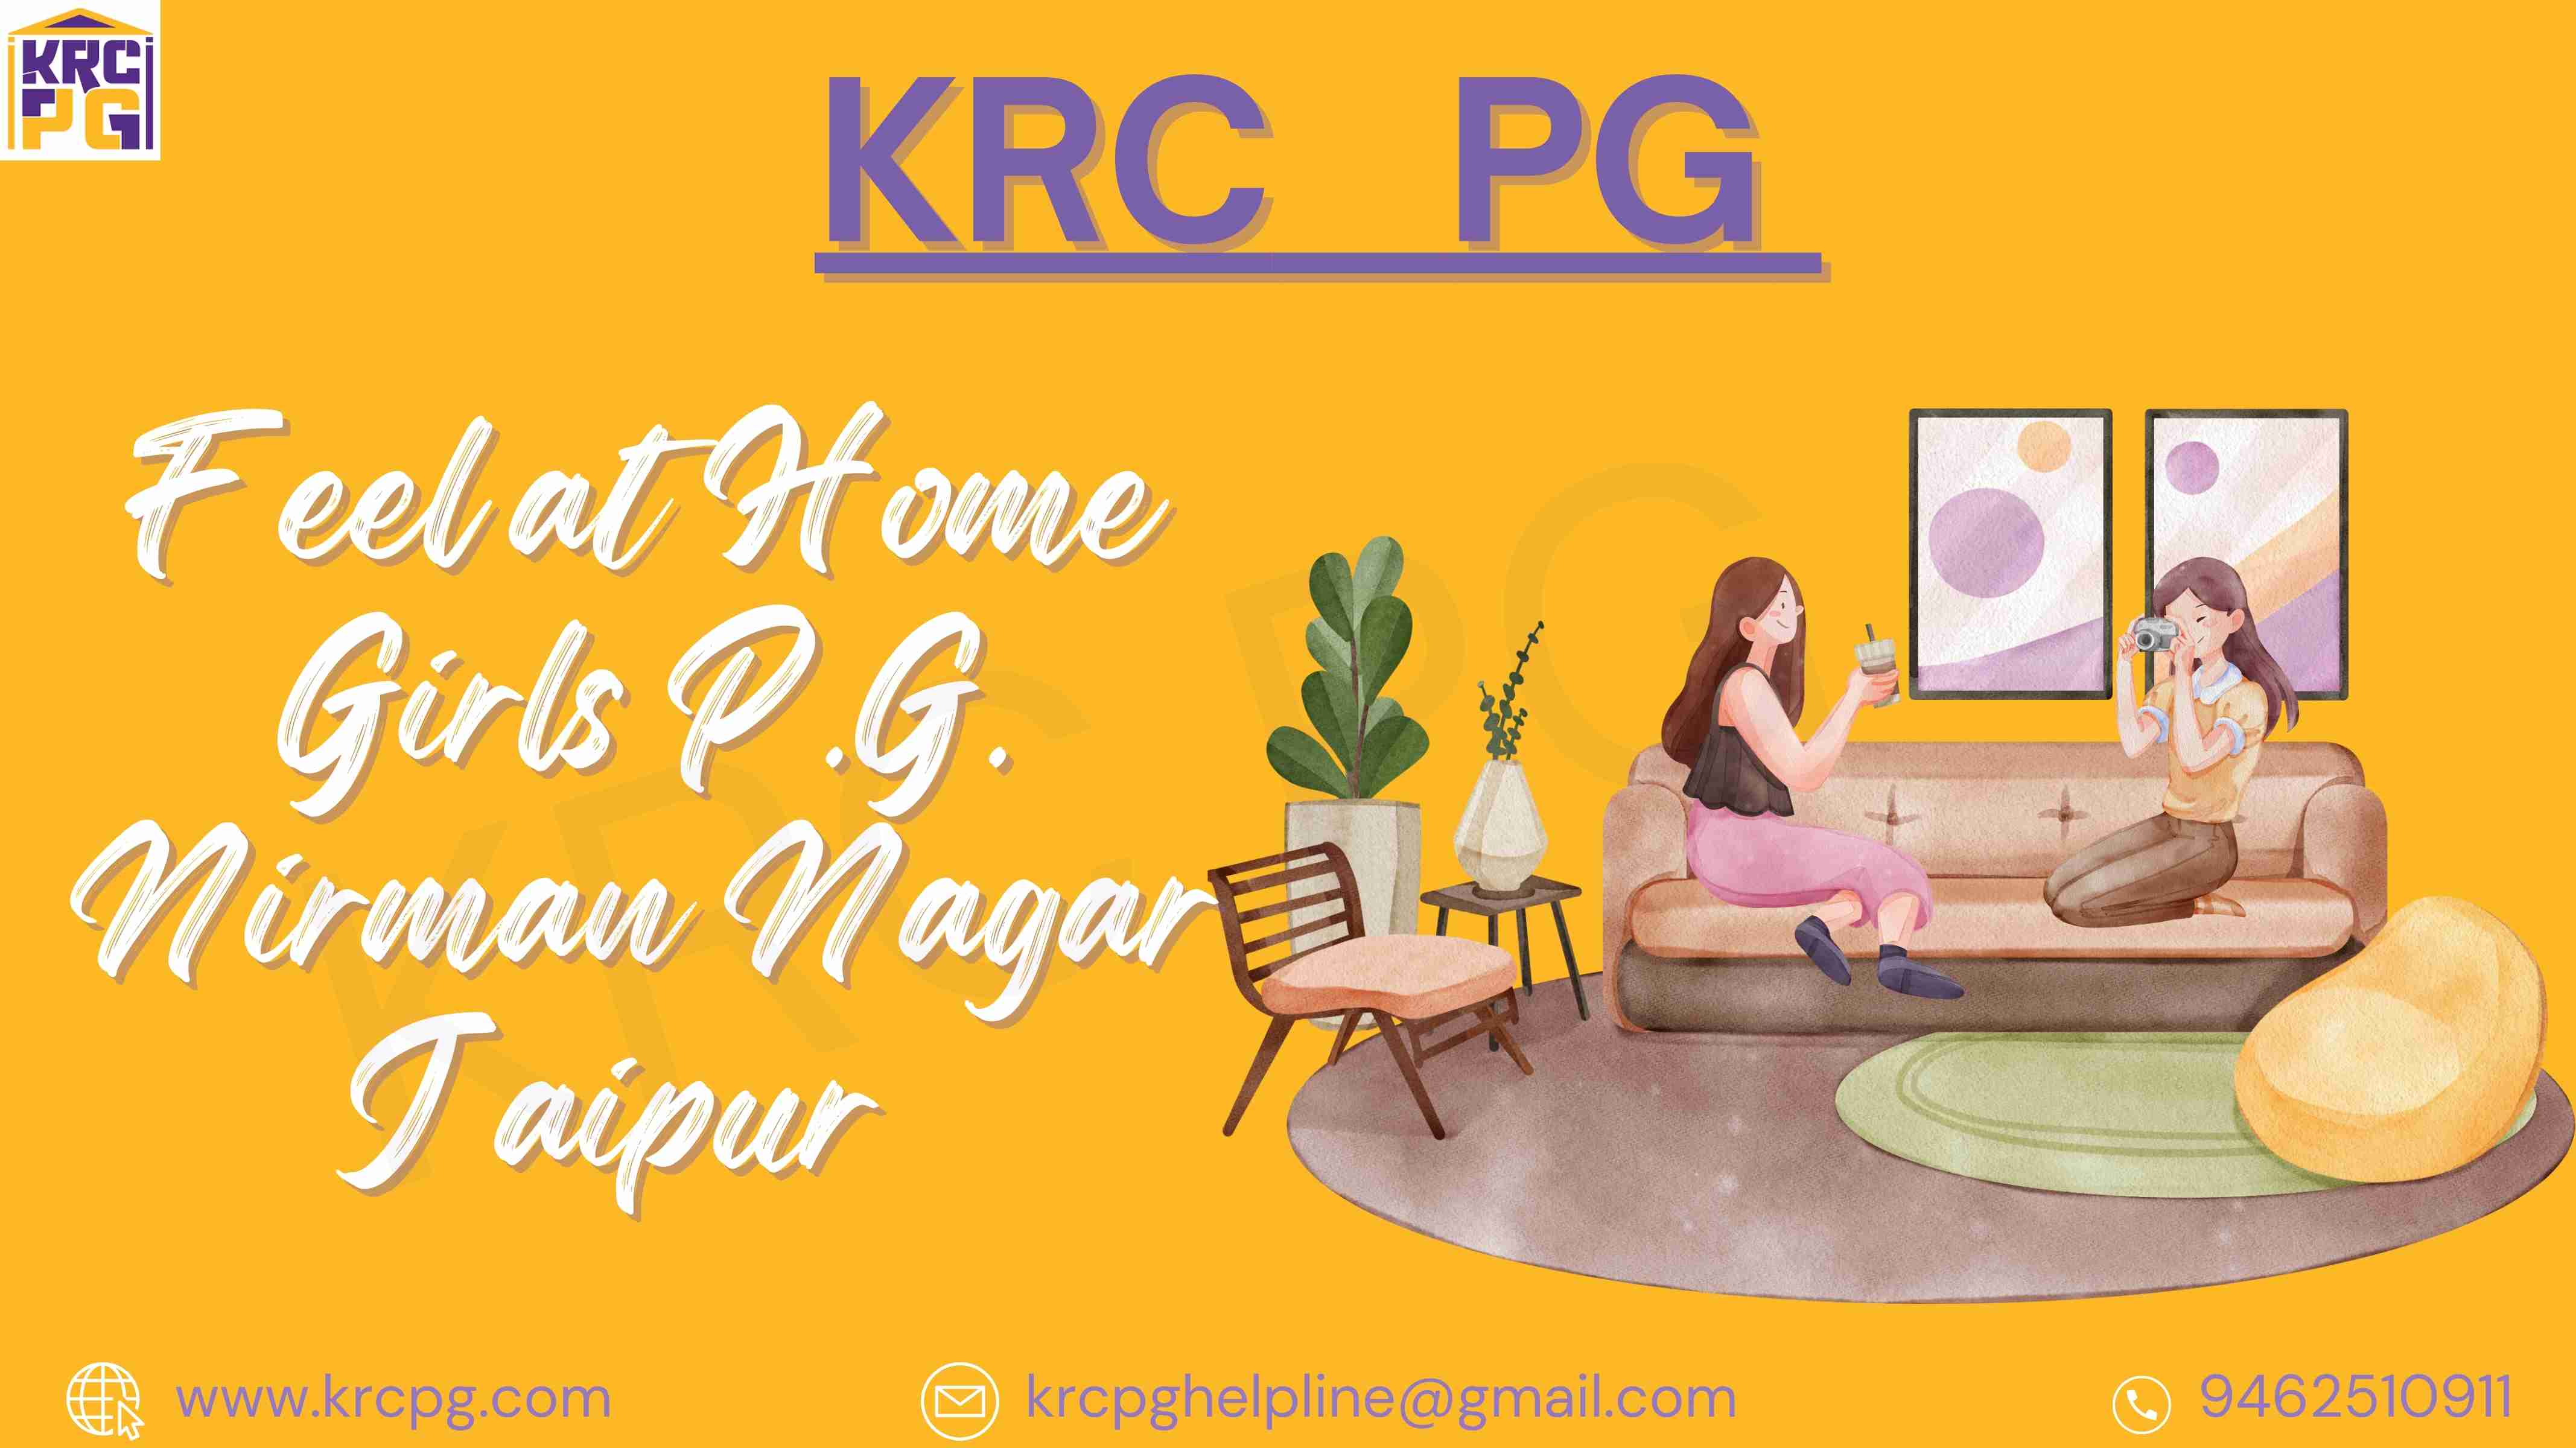 FEEL AT HOME GIRLS P.G.;  Nirman Nagar Jaipur